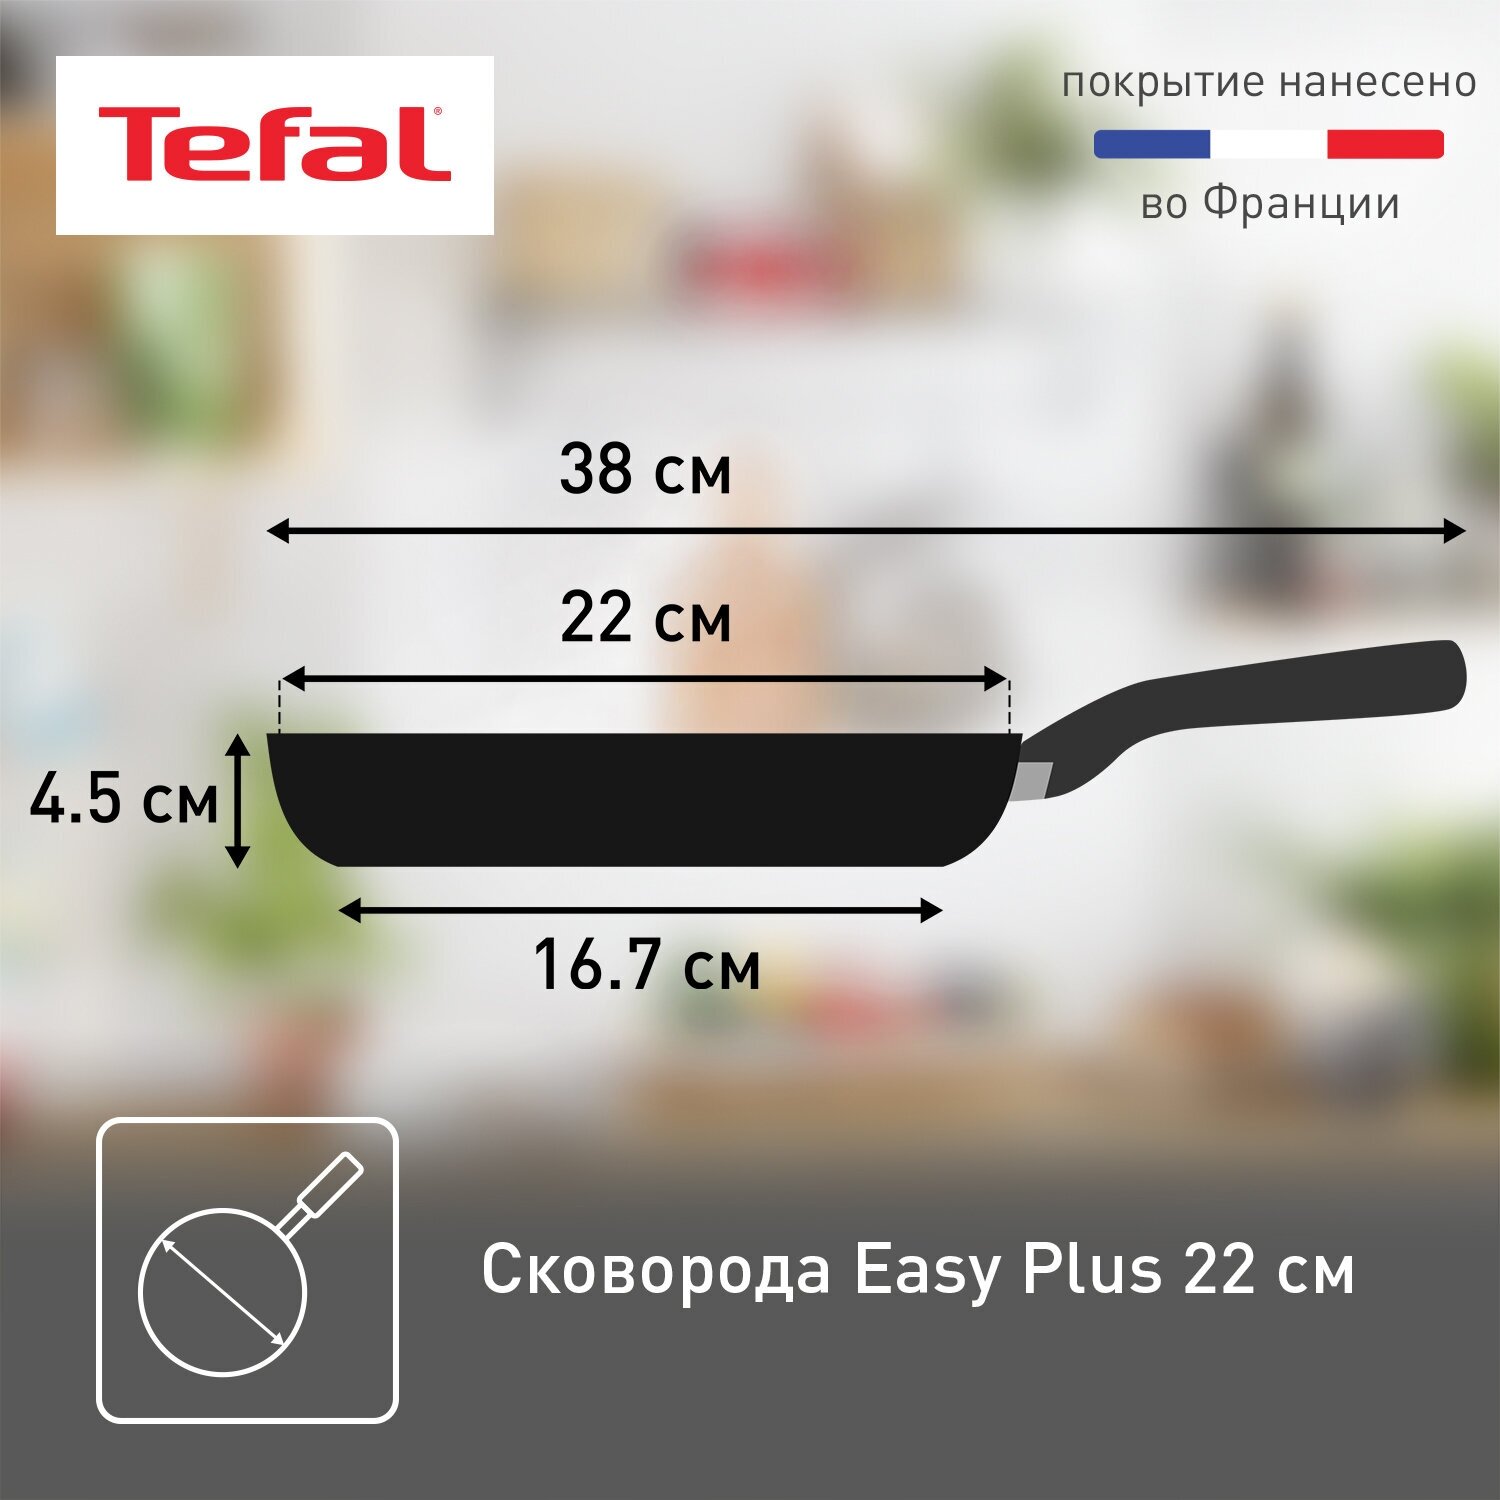 Сковорода Tefal Easy Plus 04206122, диаметр 22 см, с индикатором температуры, с антипригарным покрытием, для газовых, электрических плит